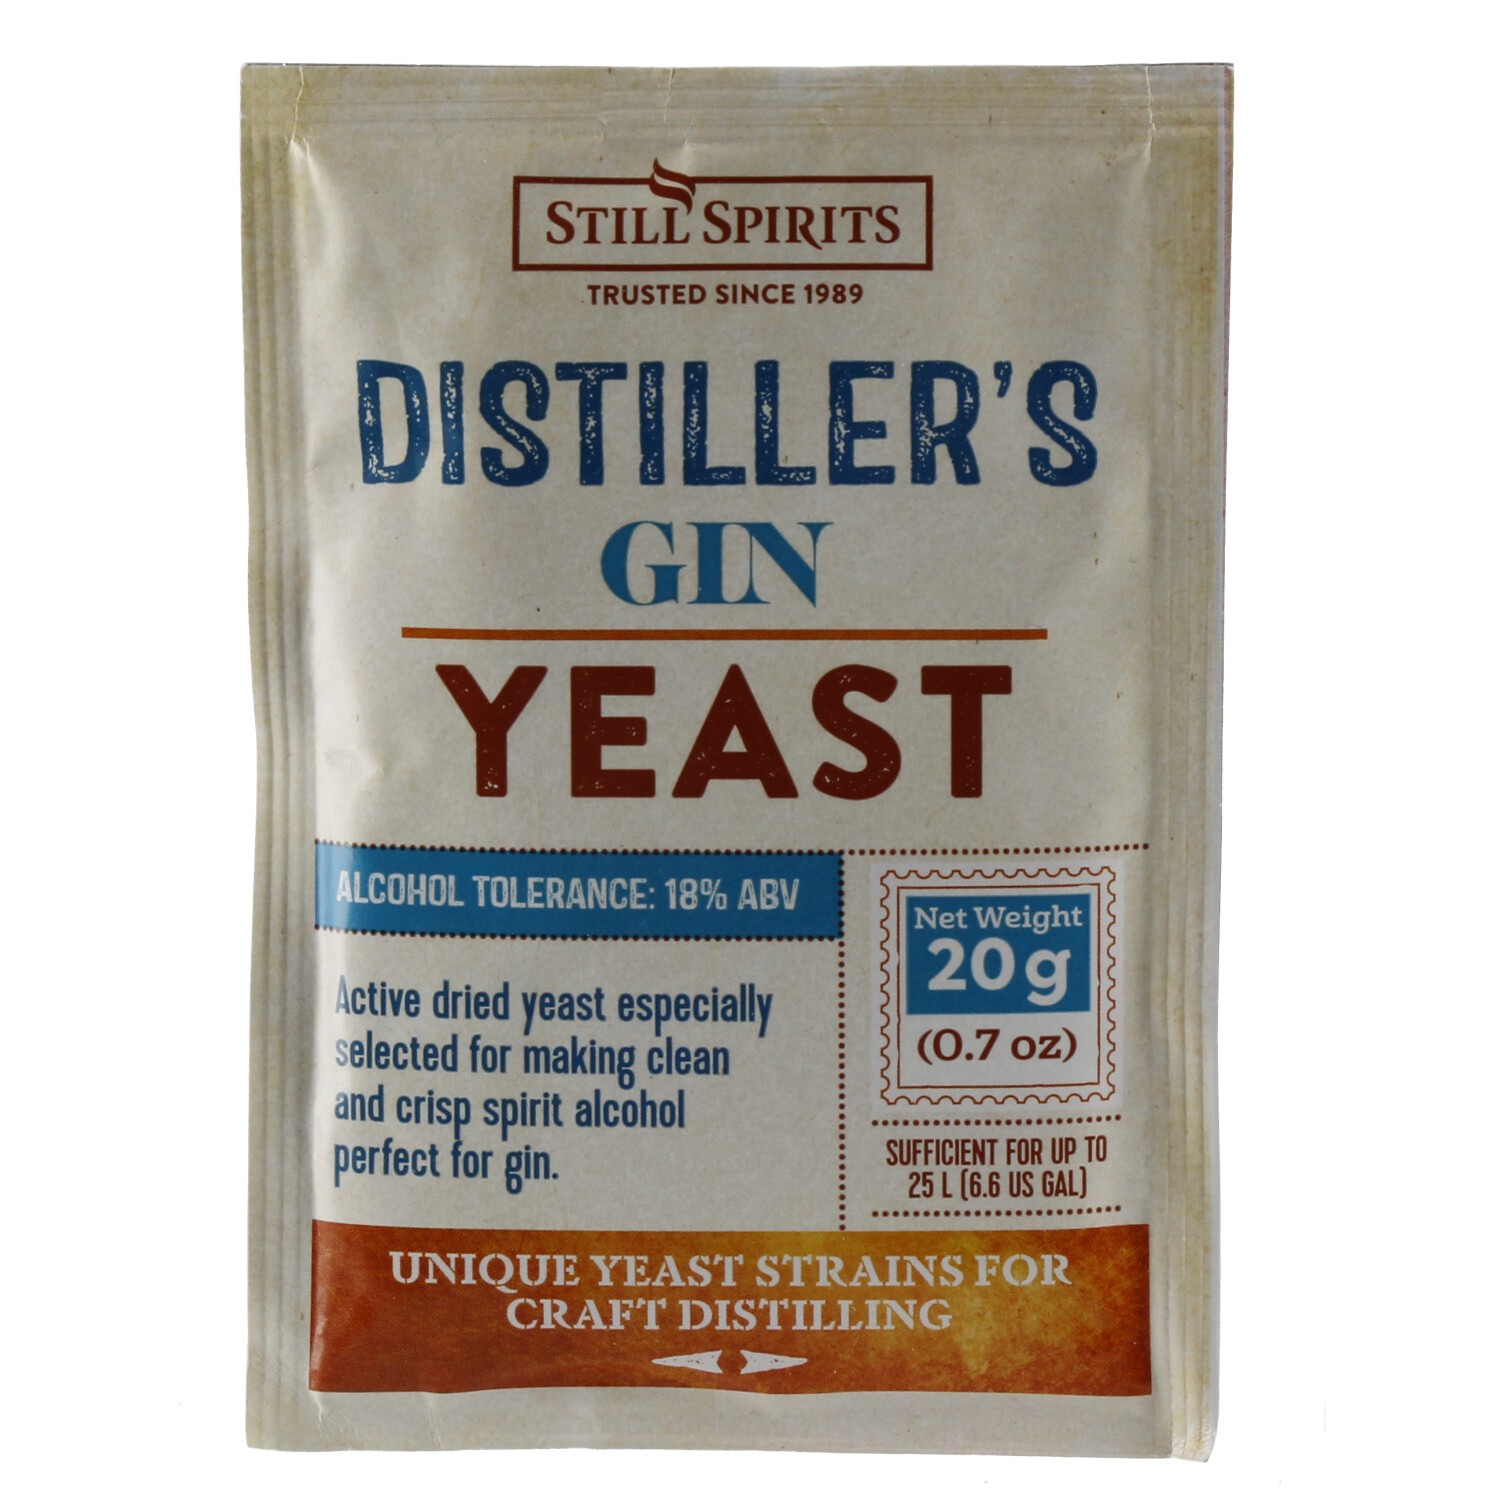 Still Spirits Distiller's Yeast Gin 20 gr